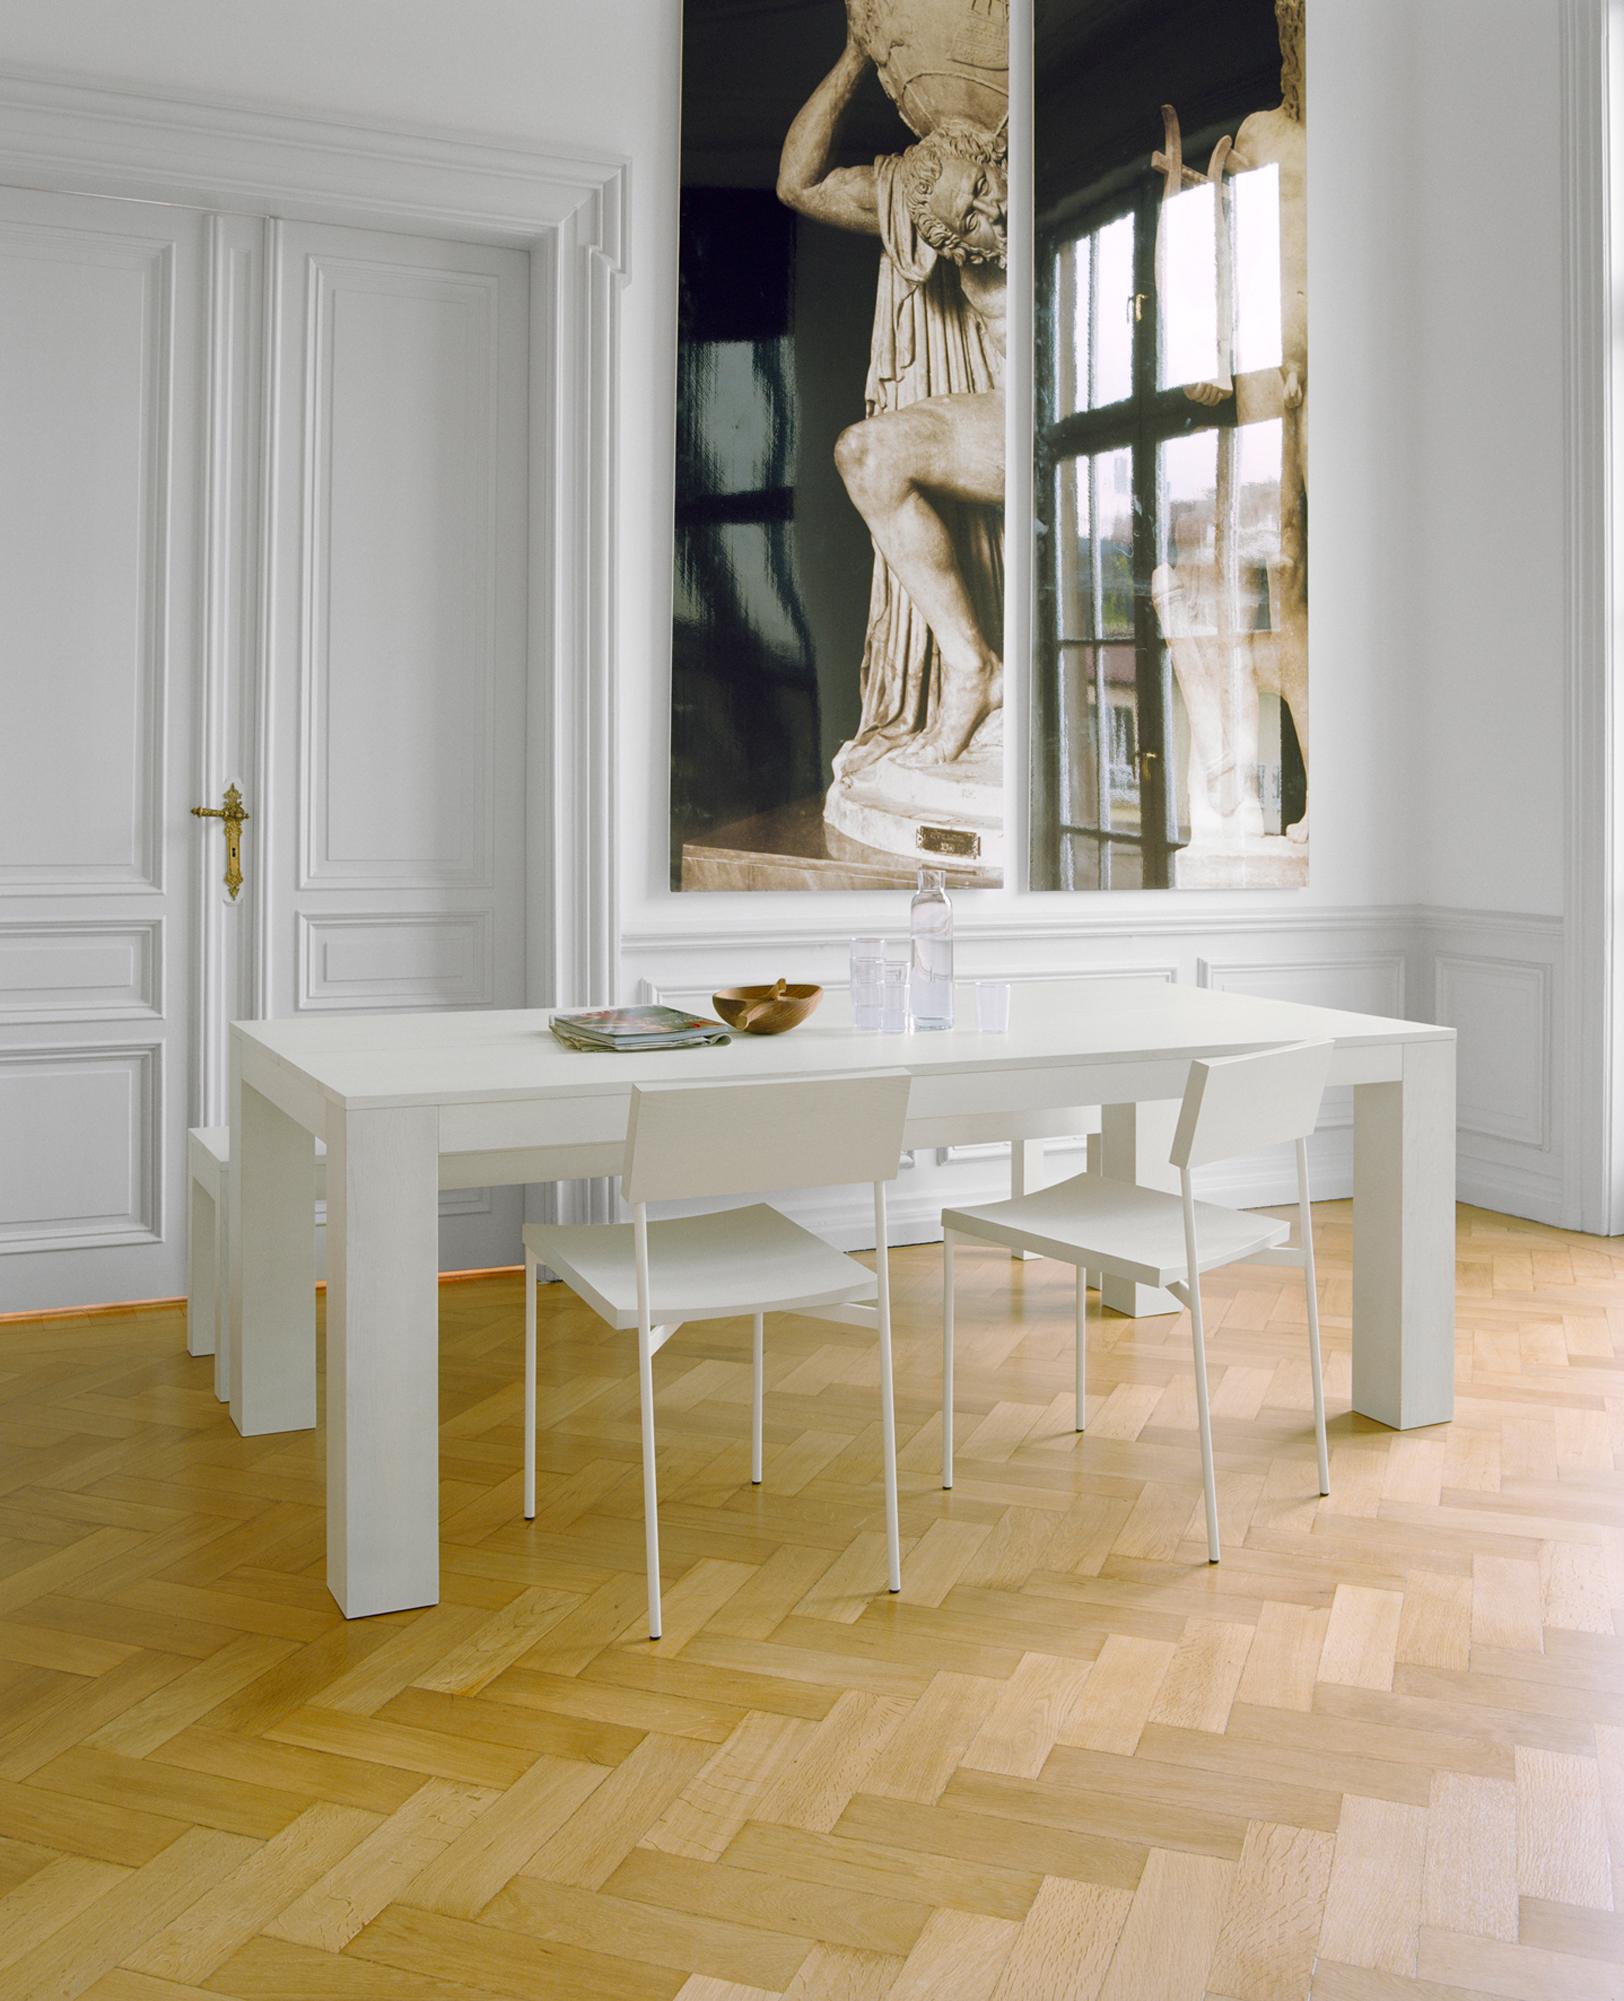 Esstisch und Stühle in Weiß #flügeltür #weißerstuhl #zimmergestaltung ©E15